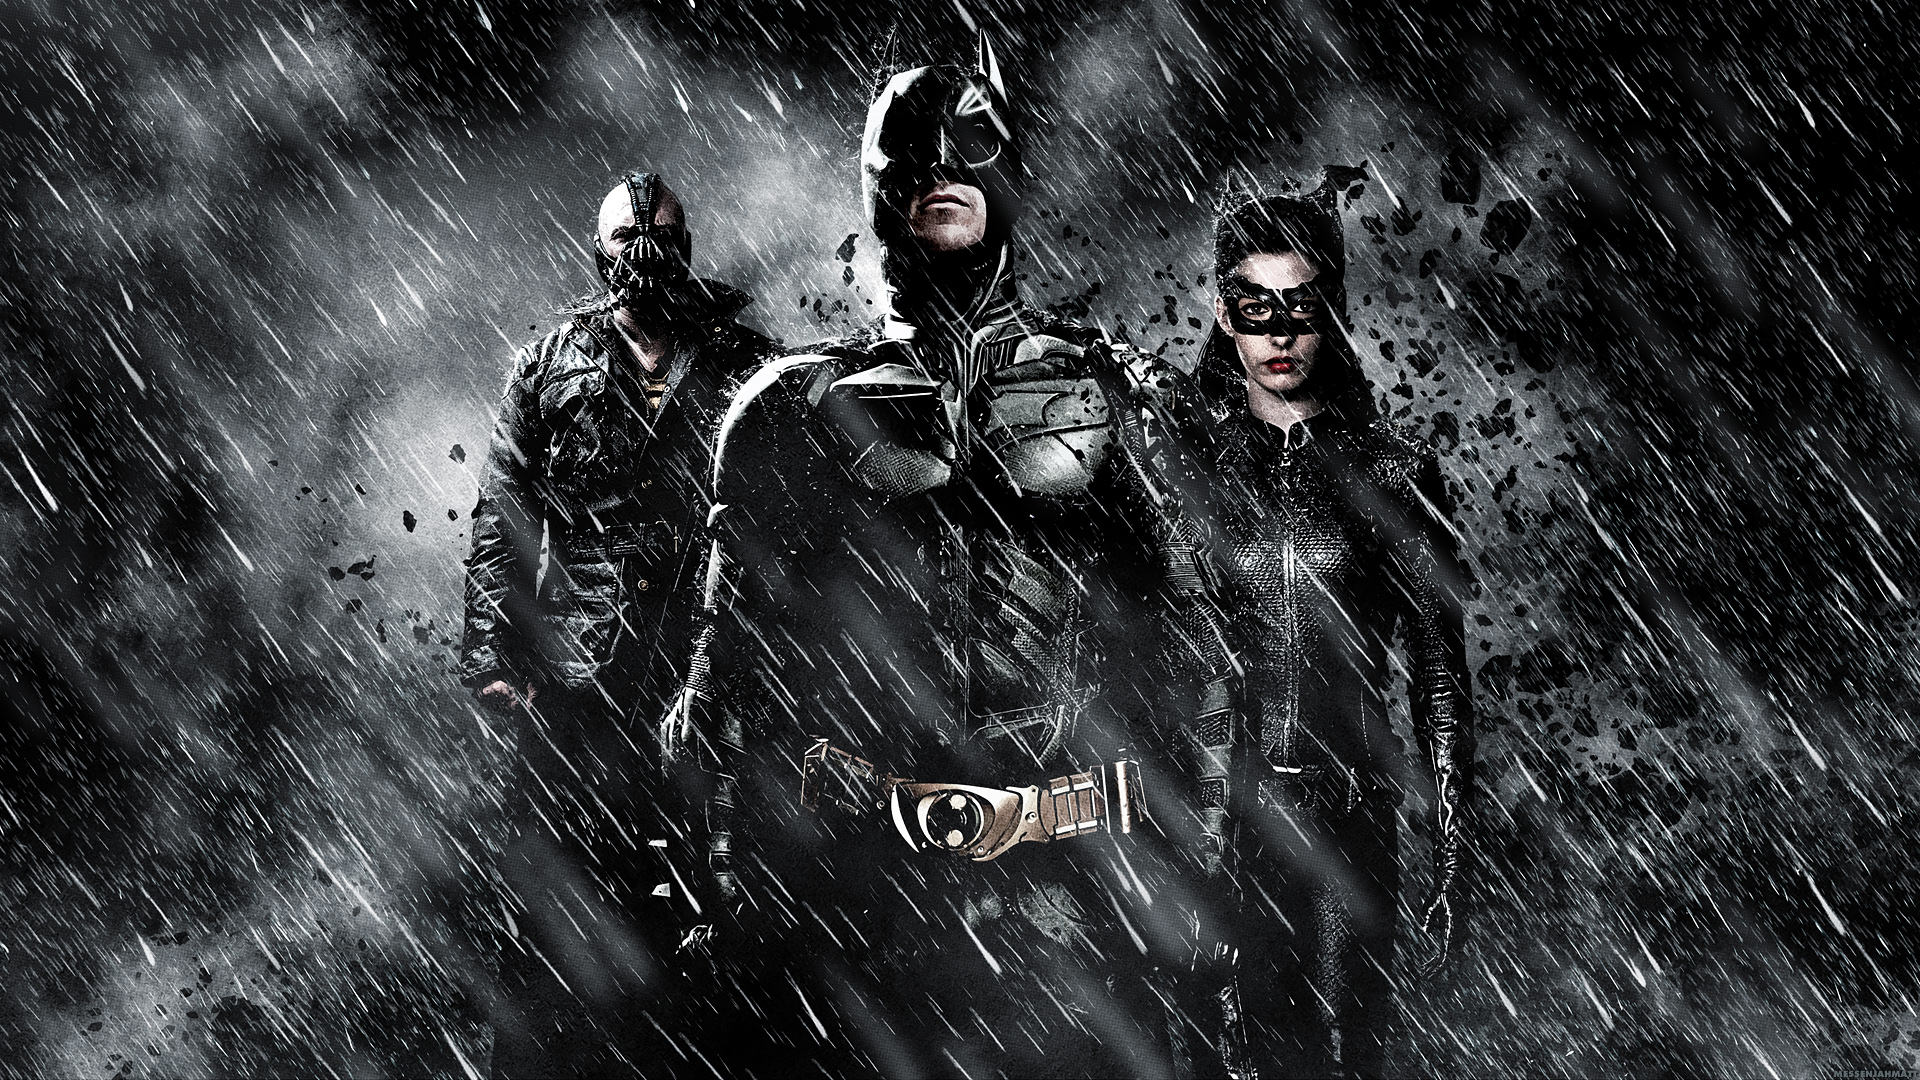 The Dark Knight Rises Movie Wallpaper - Best Movies Wallpaper Hd - HD Wallpaper 